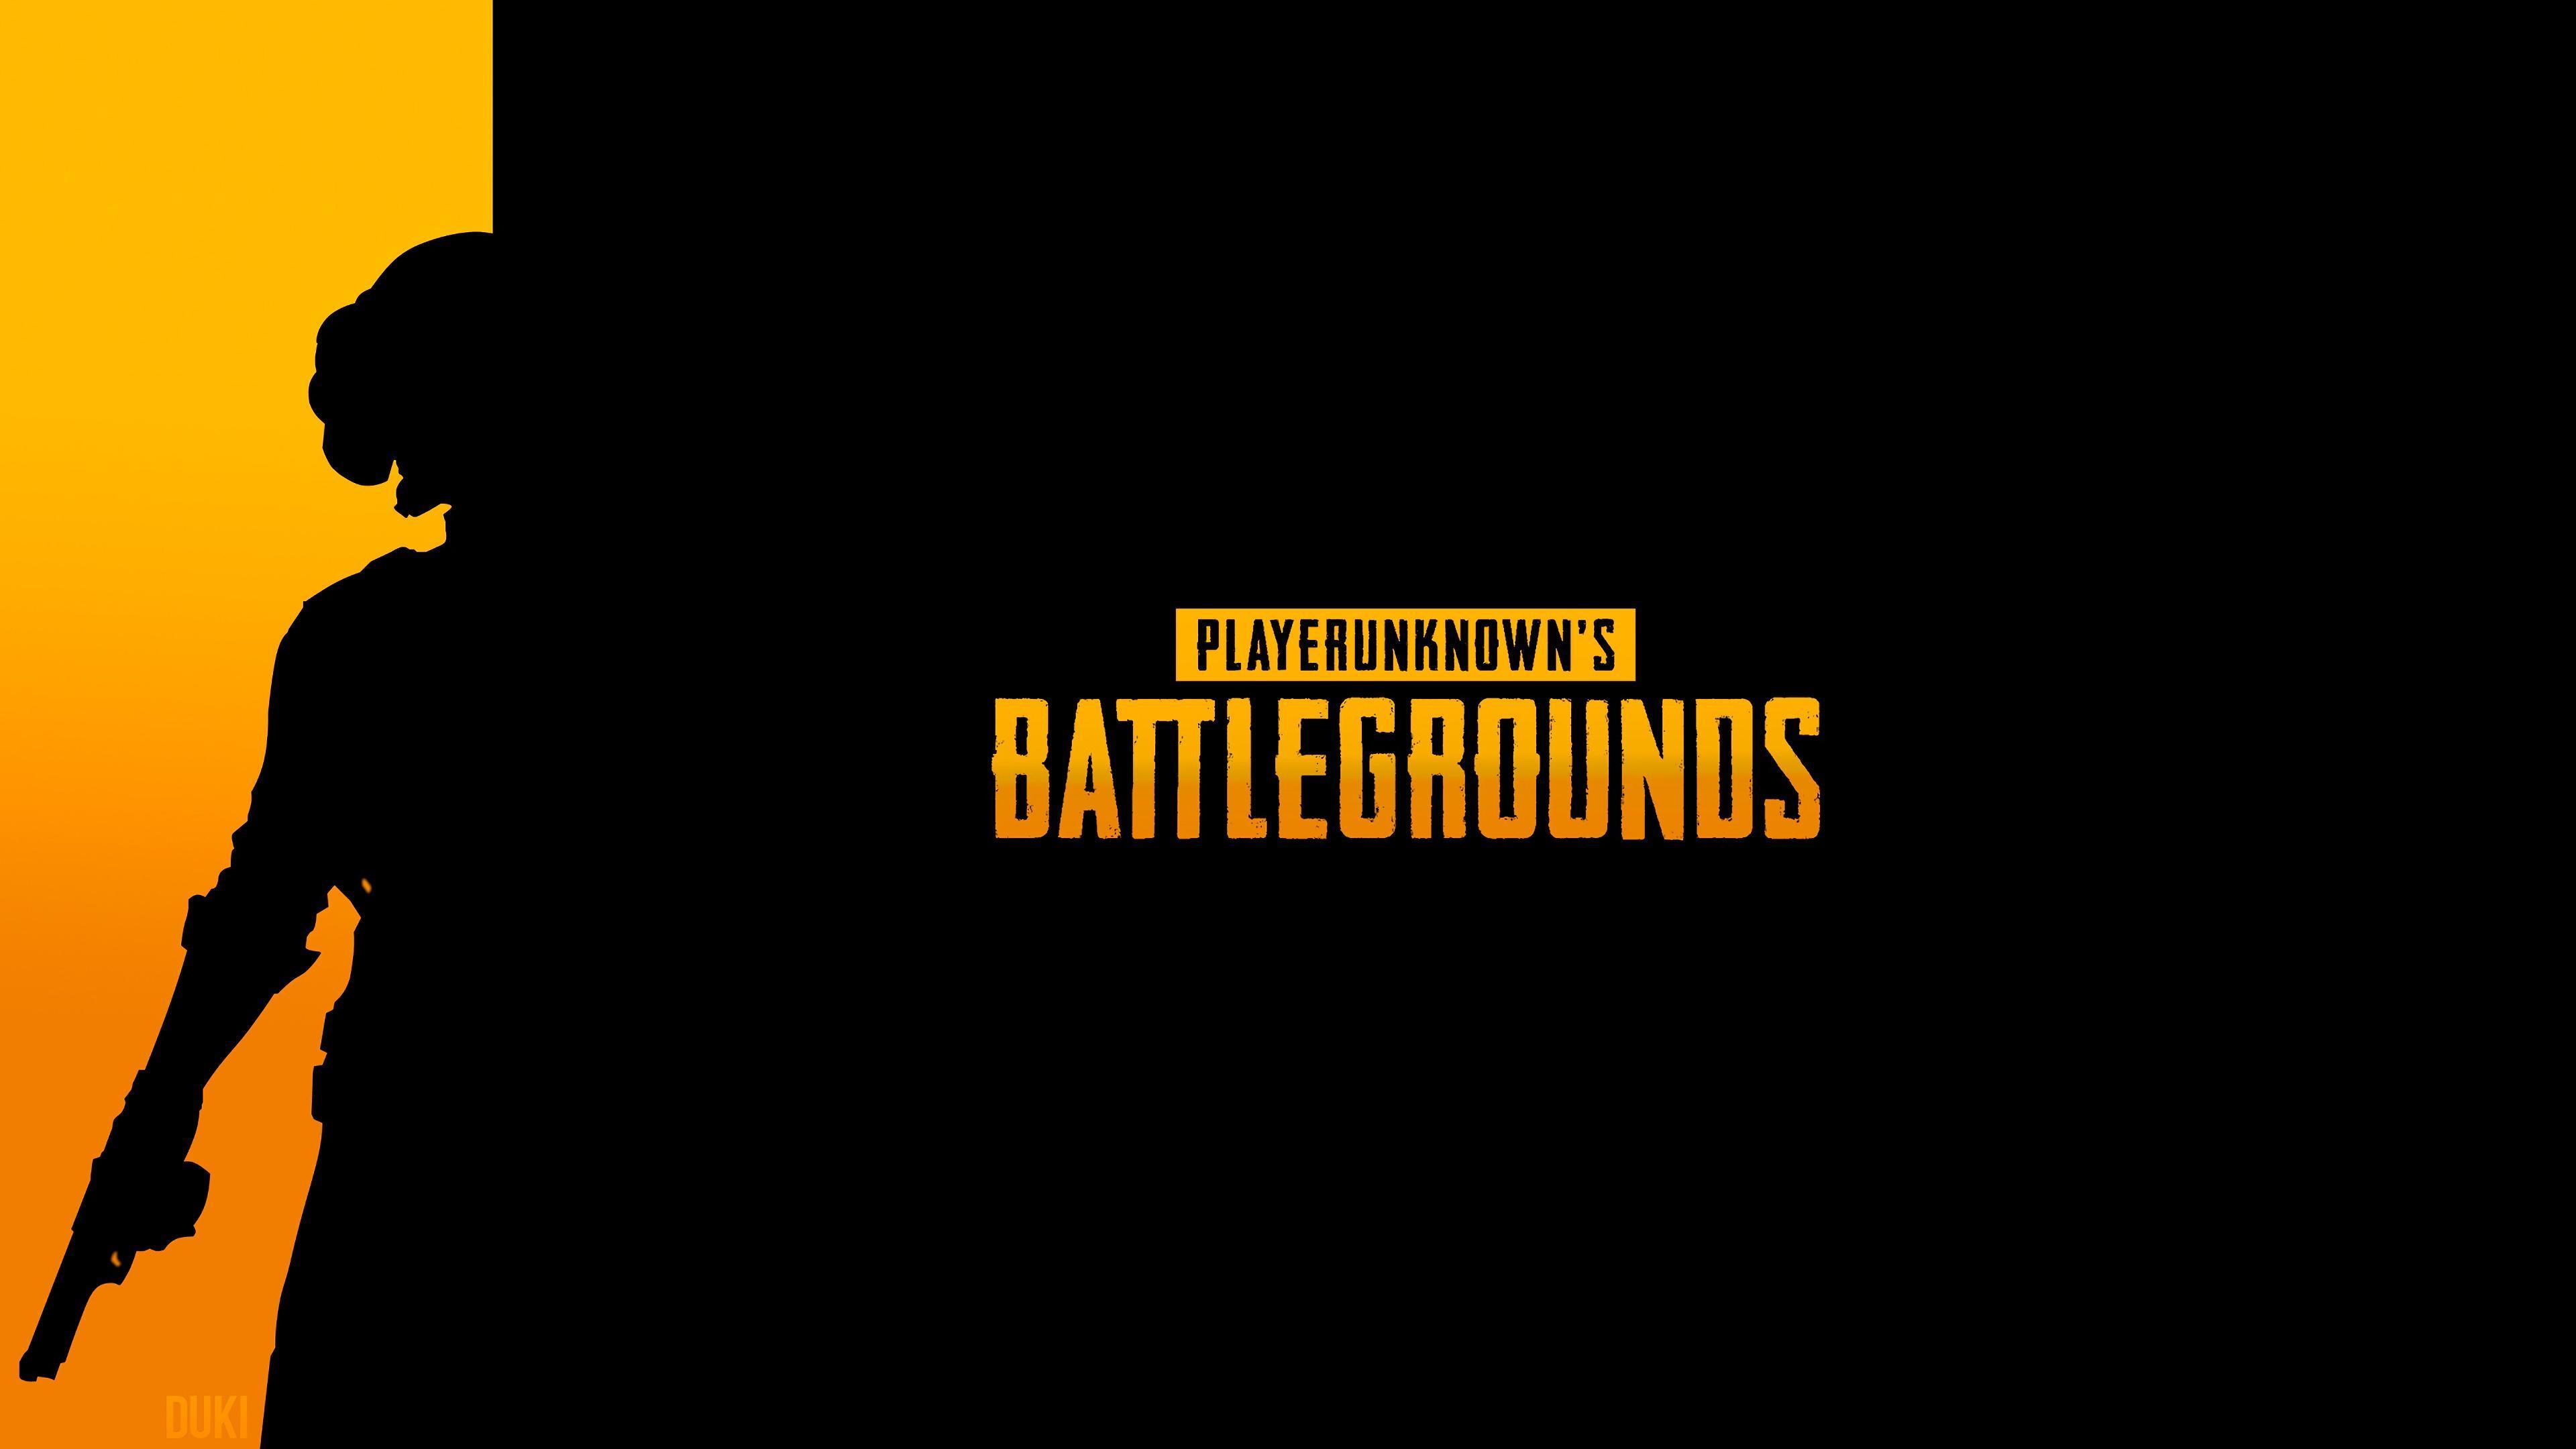 HD wallpaper, Pubg, Playerunknowns Battlegrounds, 4K